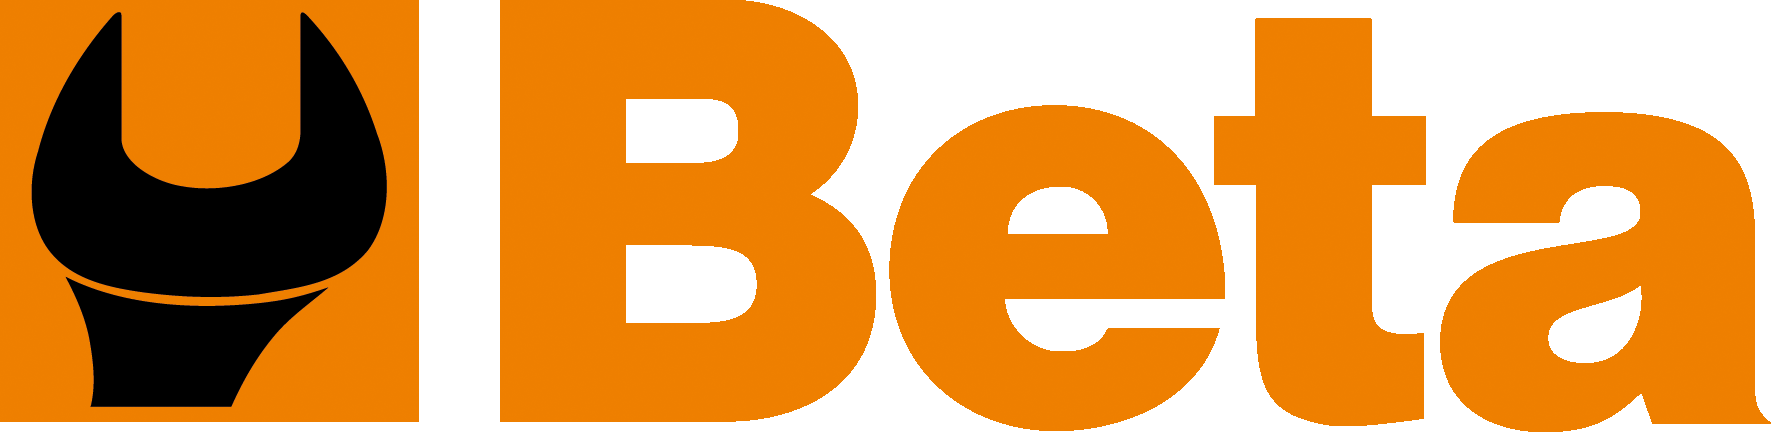 Logo_Beta_Utensili.png